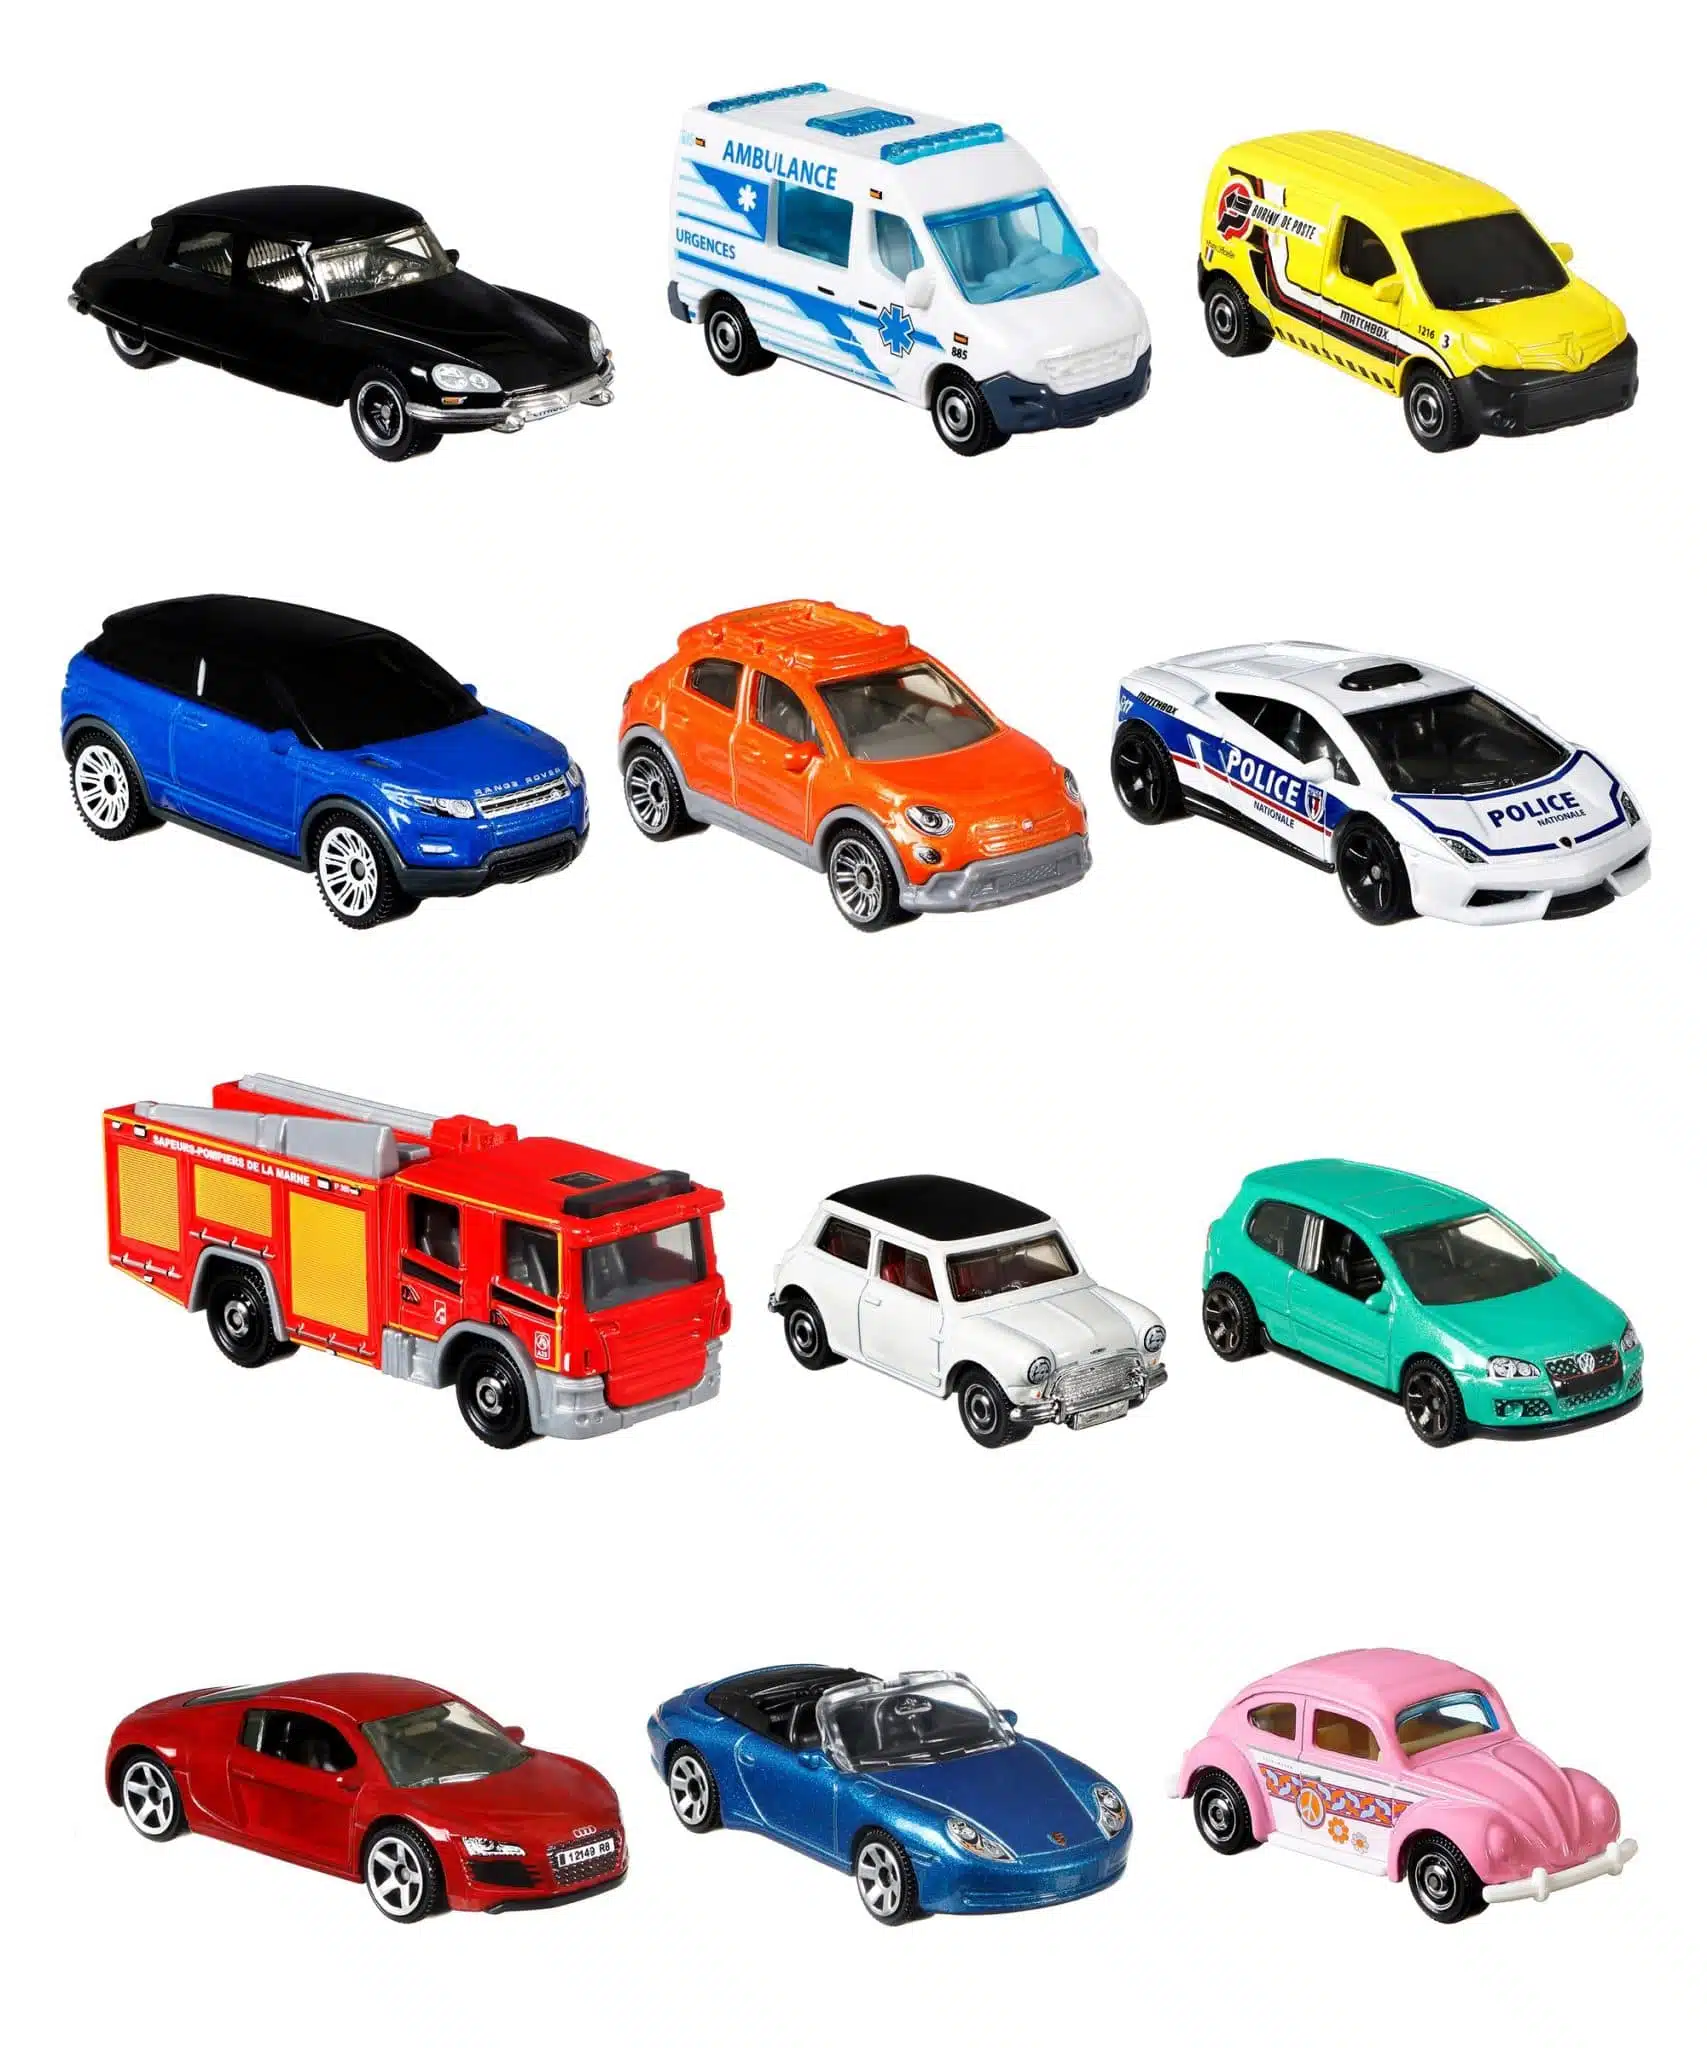 Collection de voitures miniatures Matchbox 2021